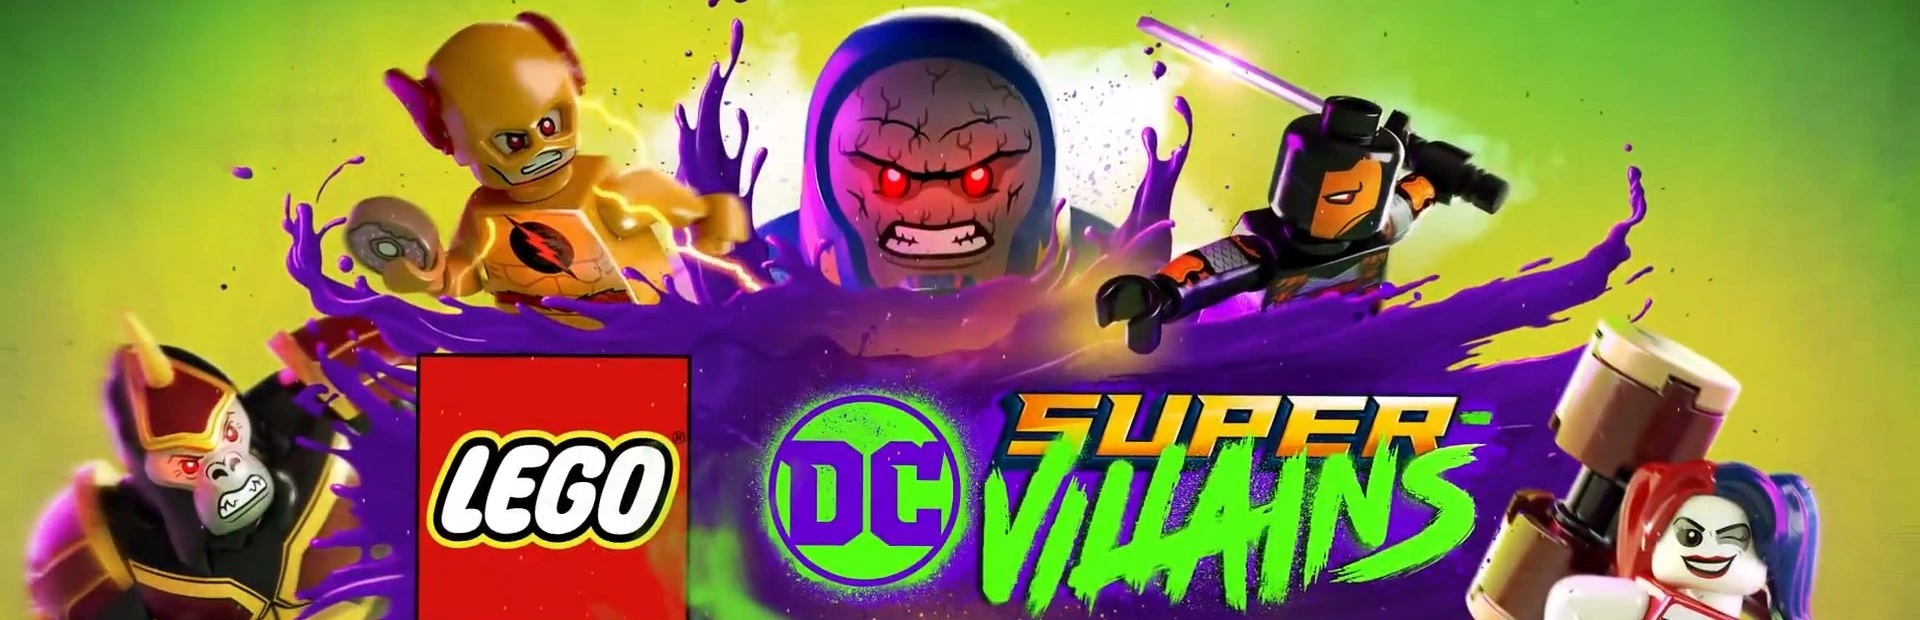 دانلود بازی LEGO DC Super-Villains برای کامپیوتر | گیمباتو